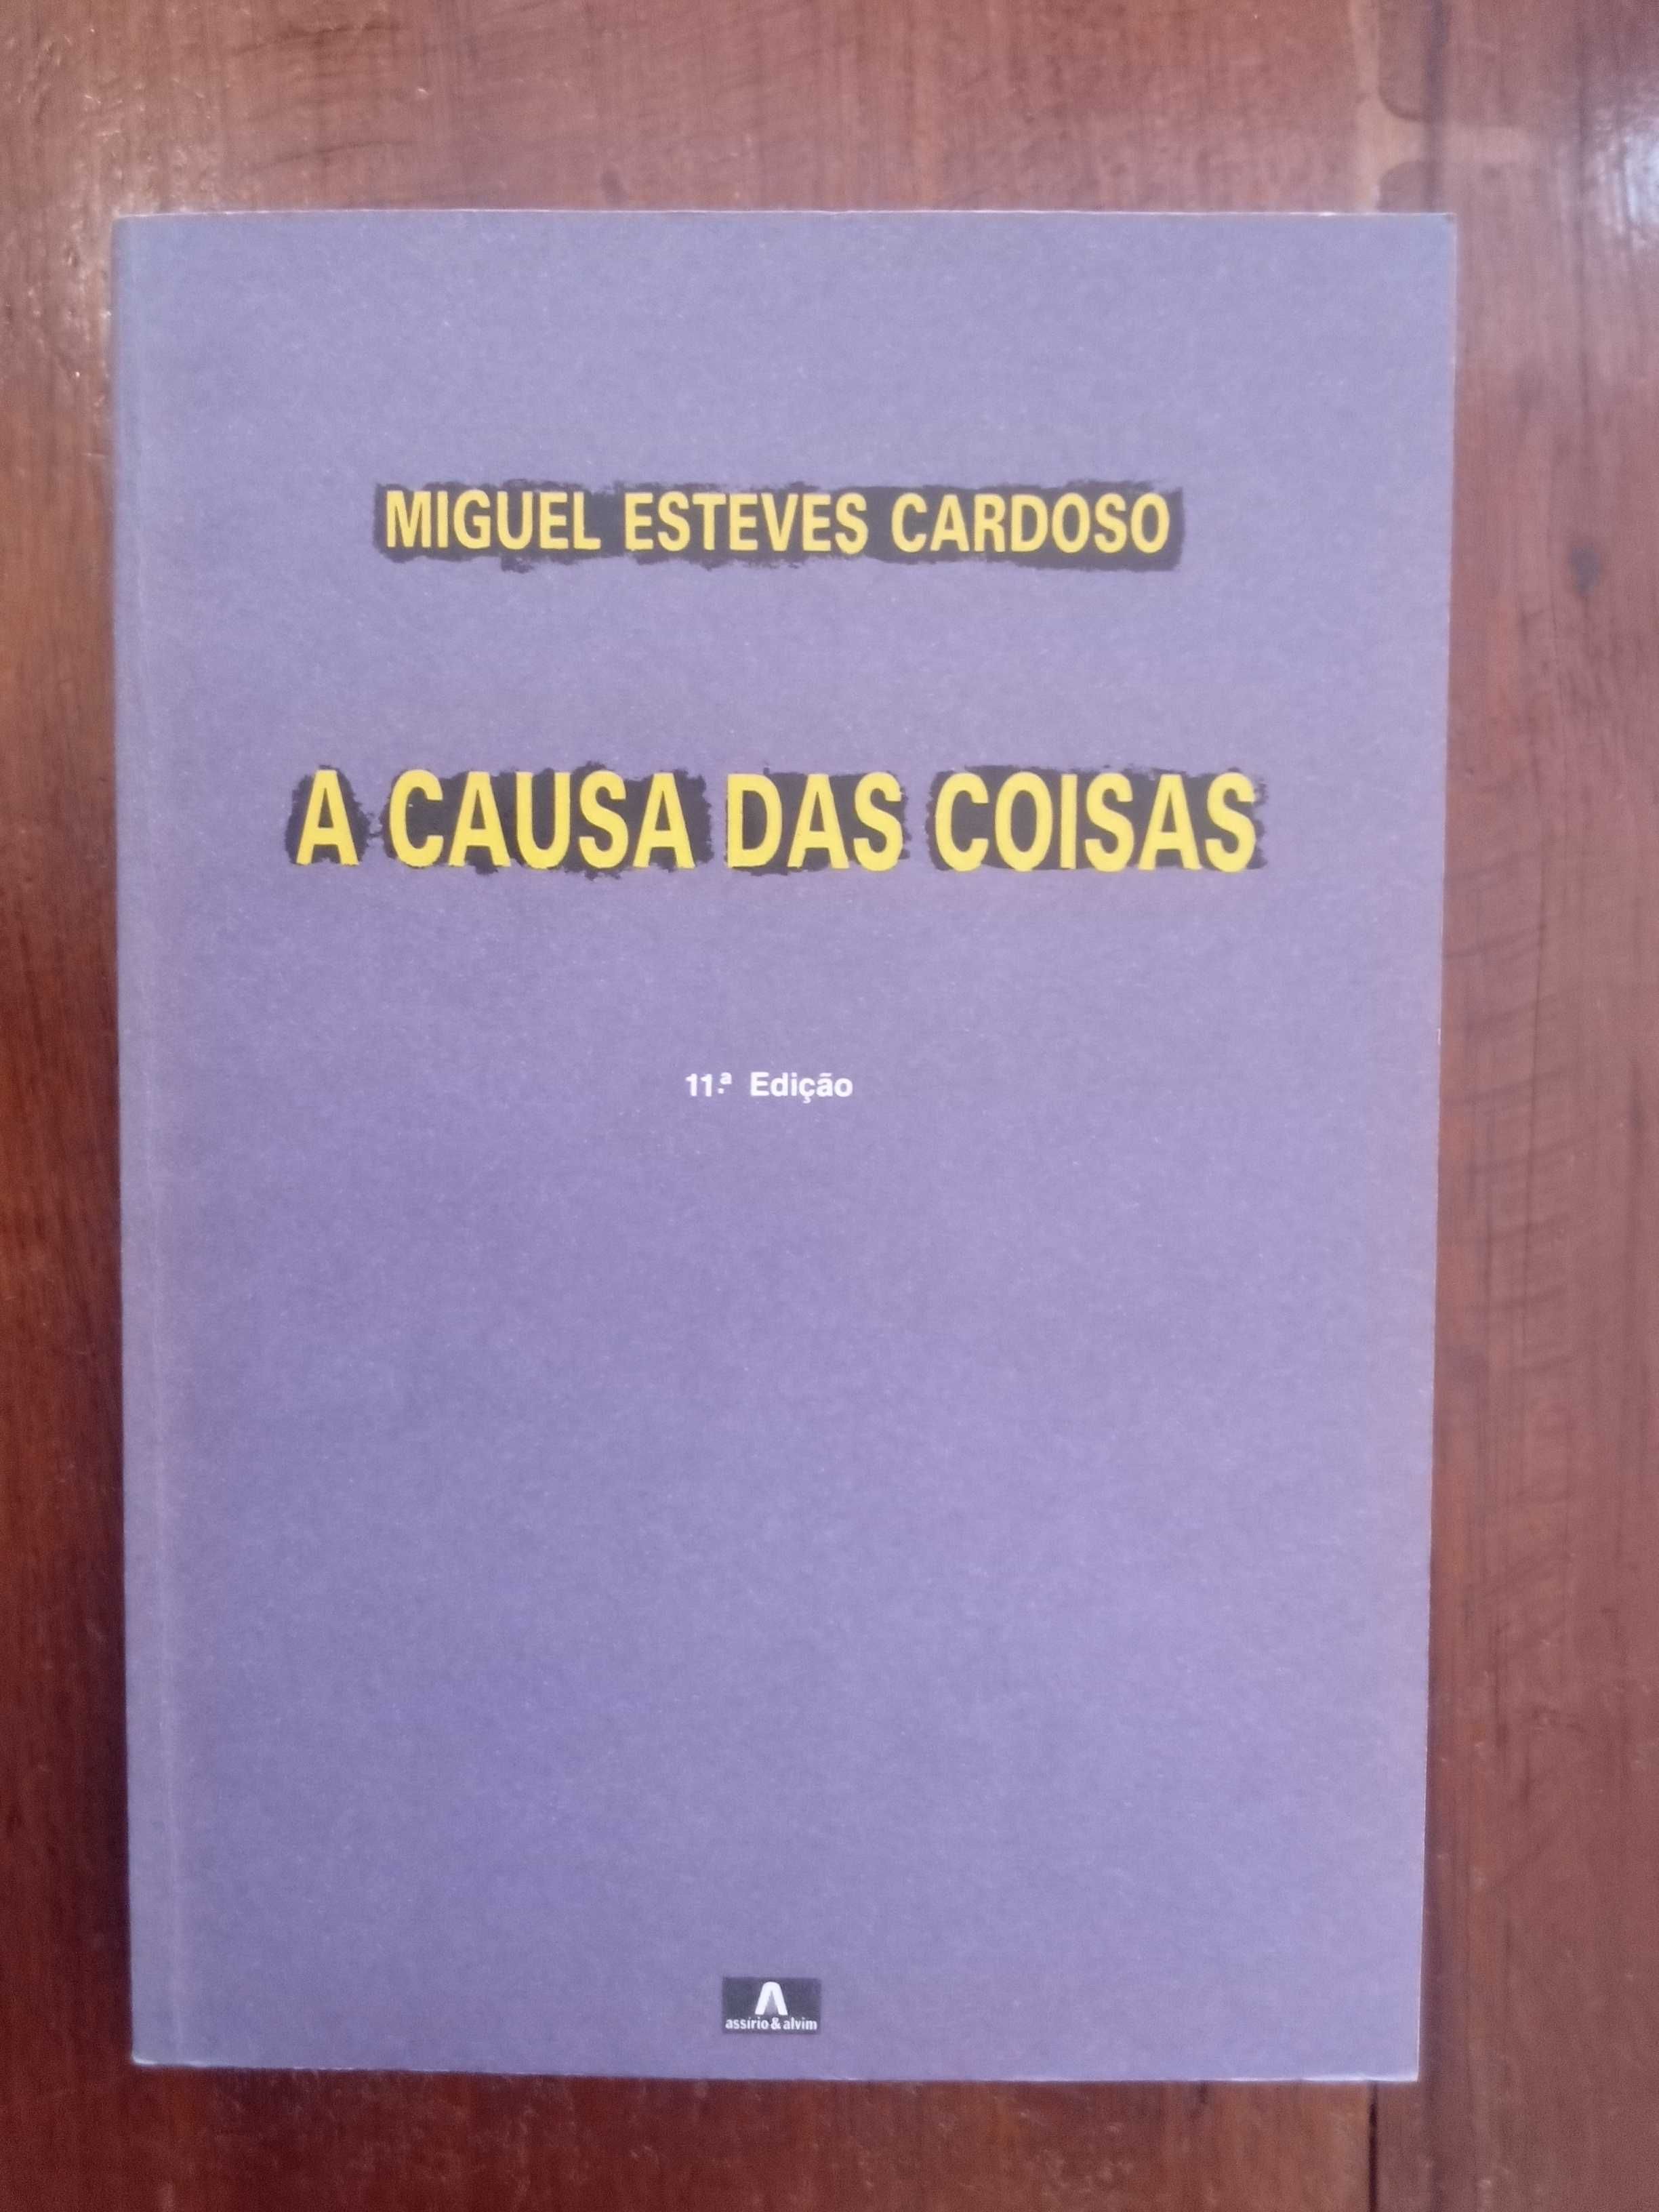 Miguel Esteves Cardoso - A causa das coisas